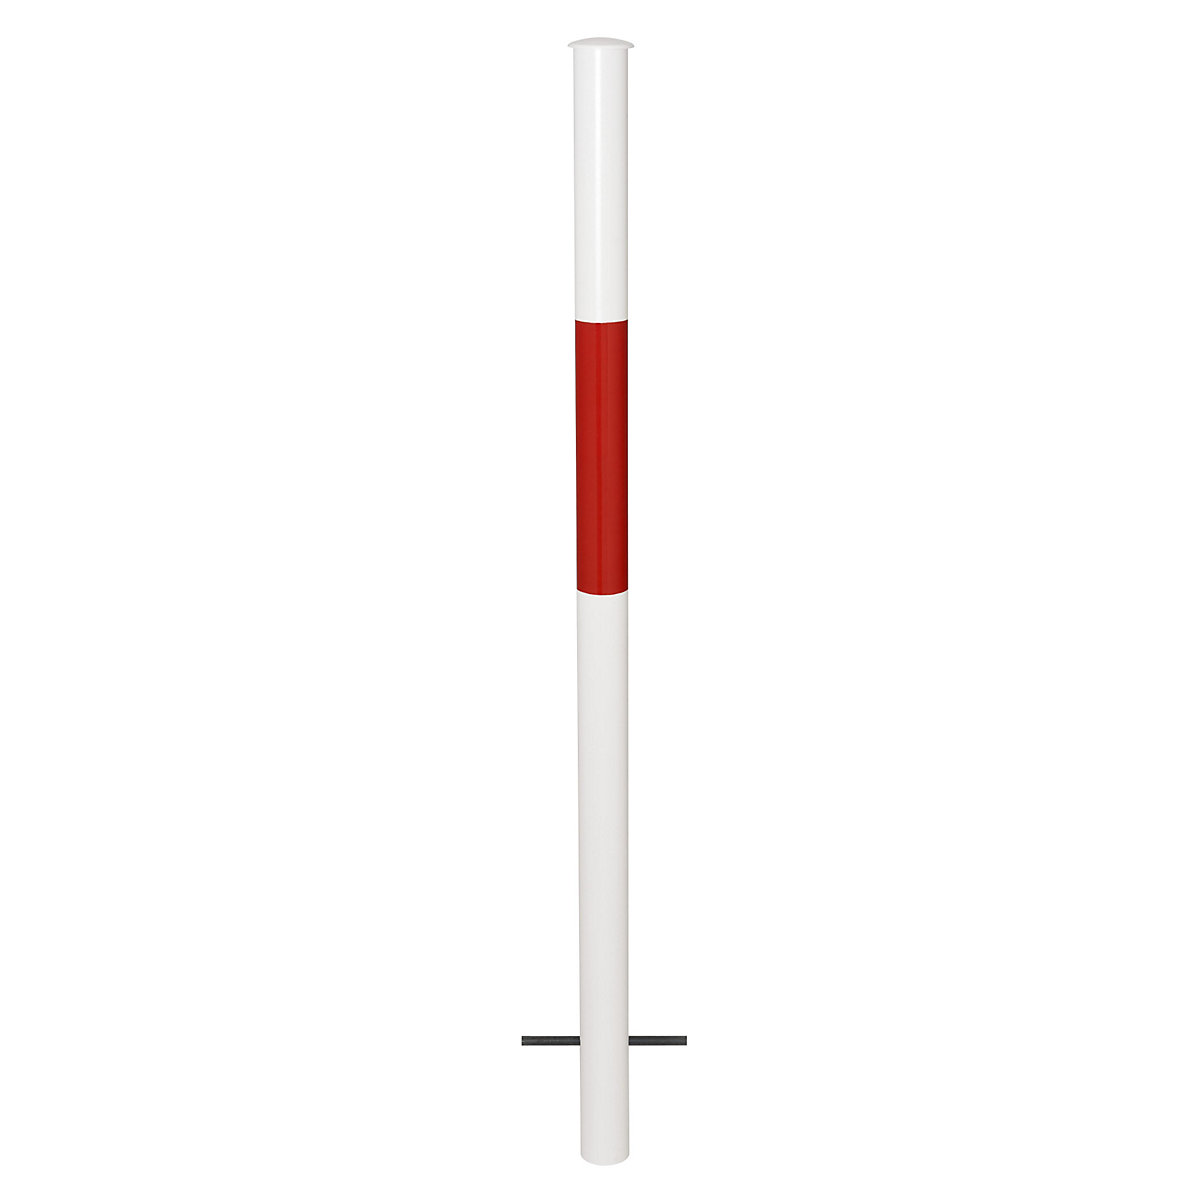 Barrière modulaire, montant à sceller, coloris rouge / blanc-5